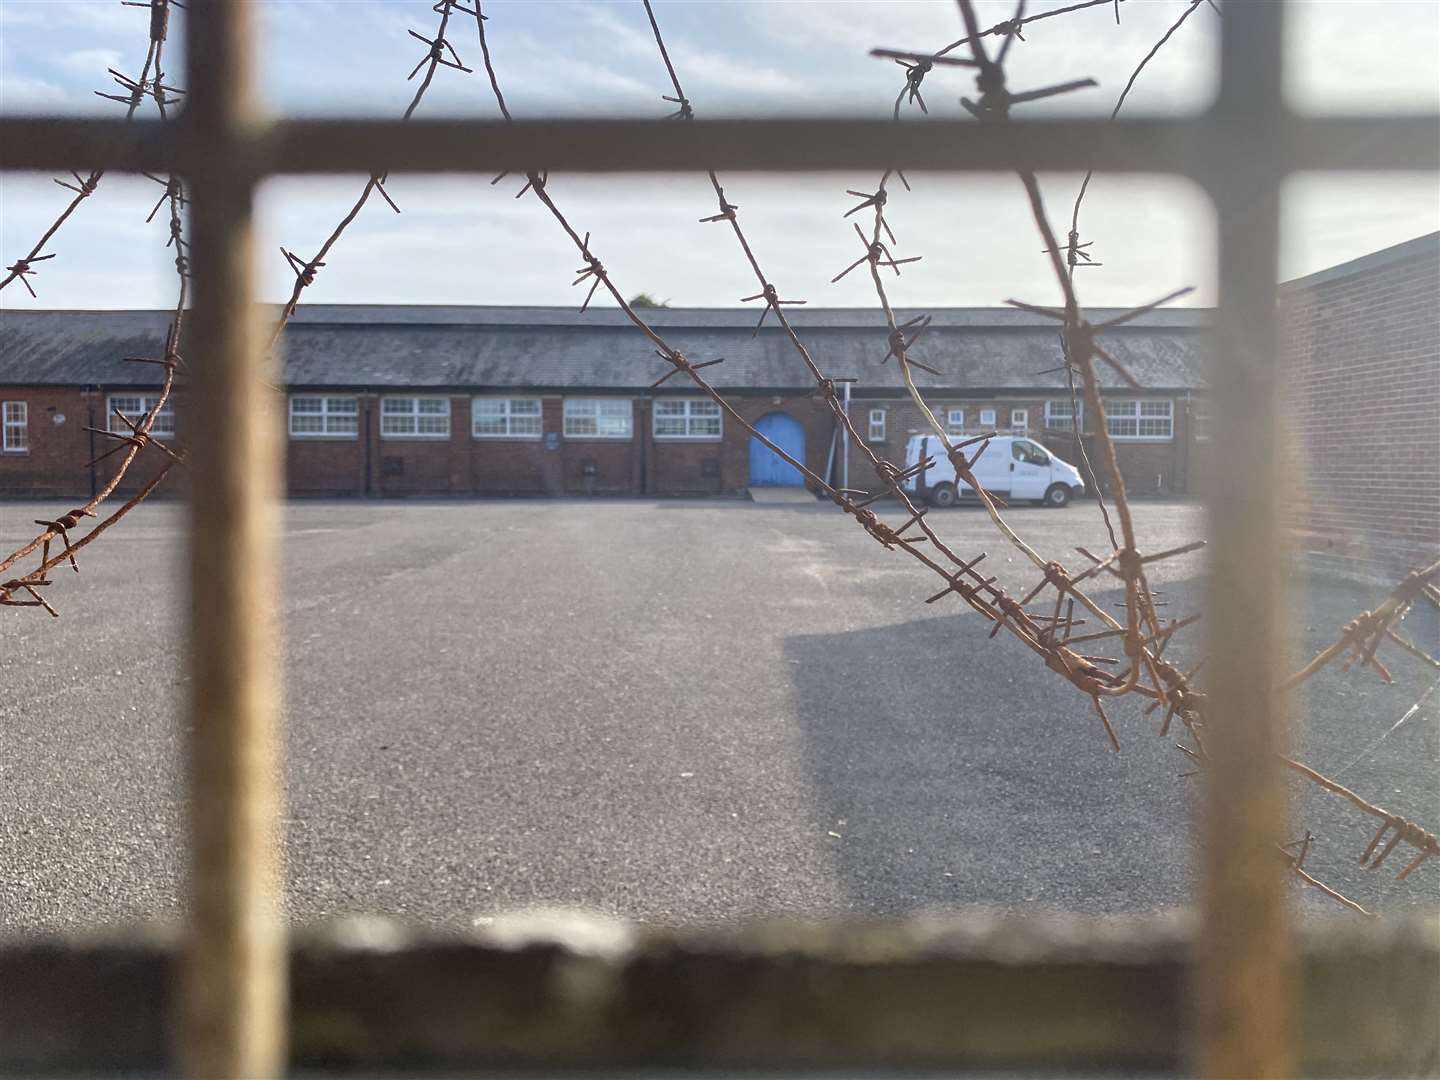 Napier Barracks in Folkestone is being used to house asylum seekers (43567098)